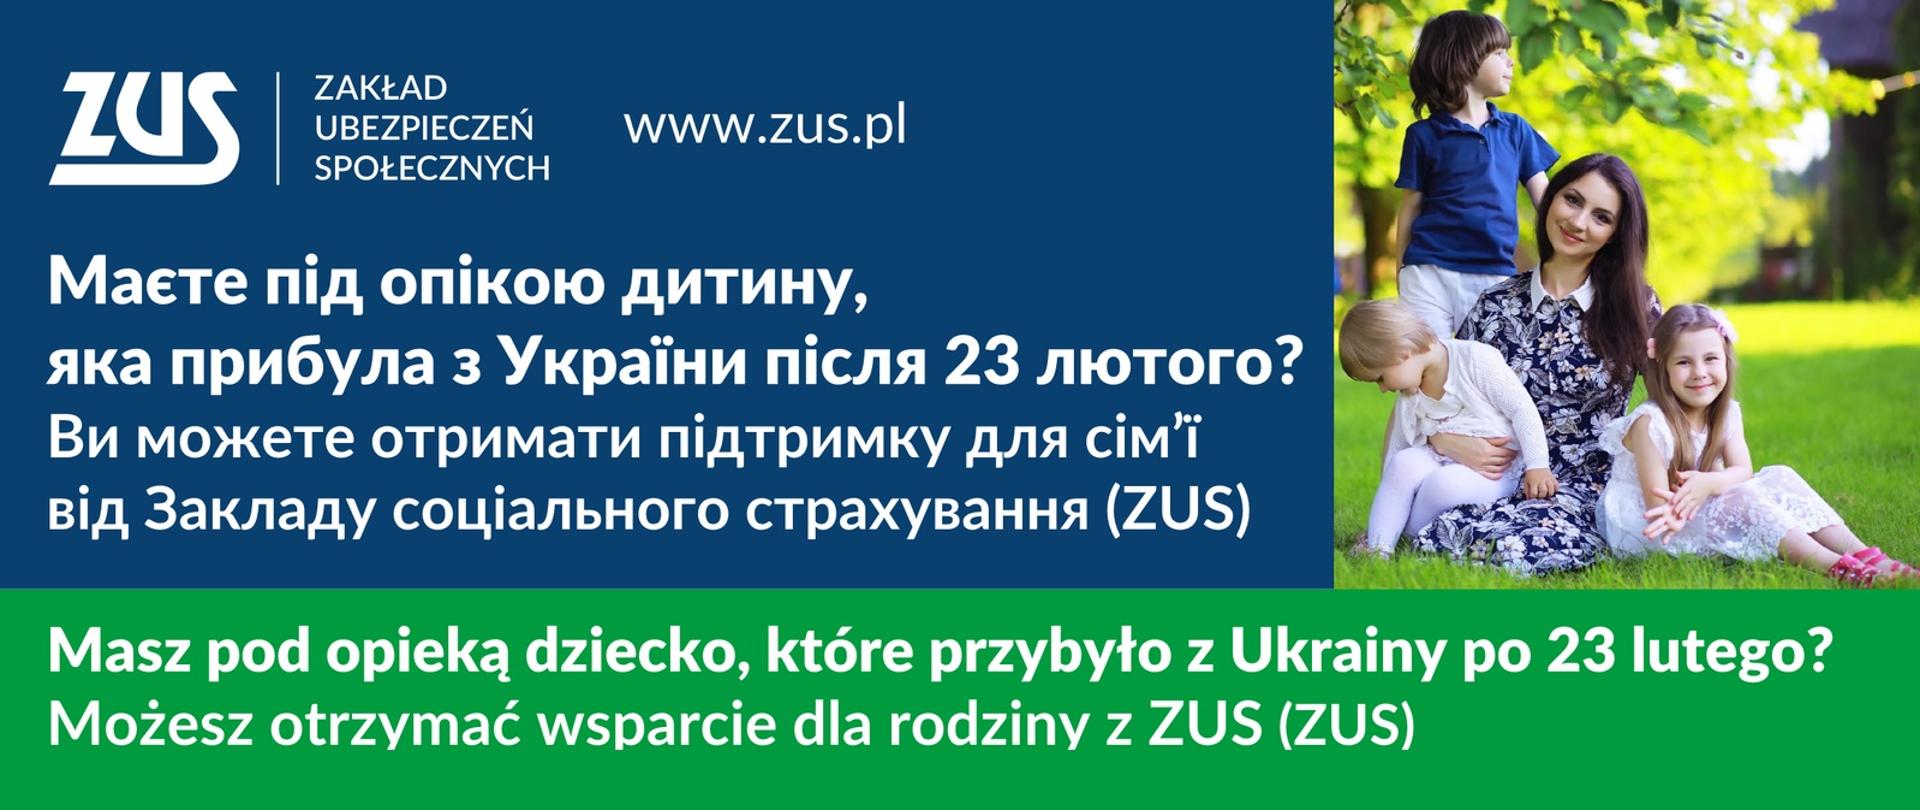 Baner z granatowo-zielonym tłem, od góry logo ZUS, adres www.zus.pl, poniżej tekst ze wstępu artykułu. Po prawej fotografia przedstawiająca uśmiechniętą kobietę z trójką dzieci siedzącą na trawie w słoneczny dzień.